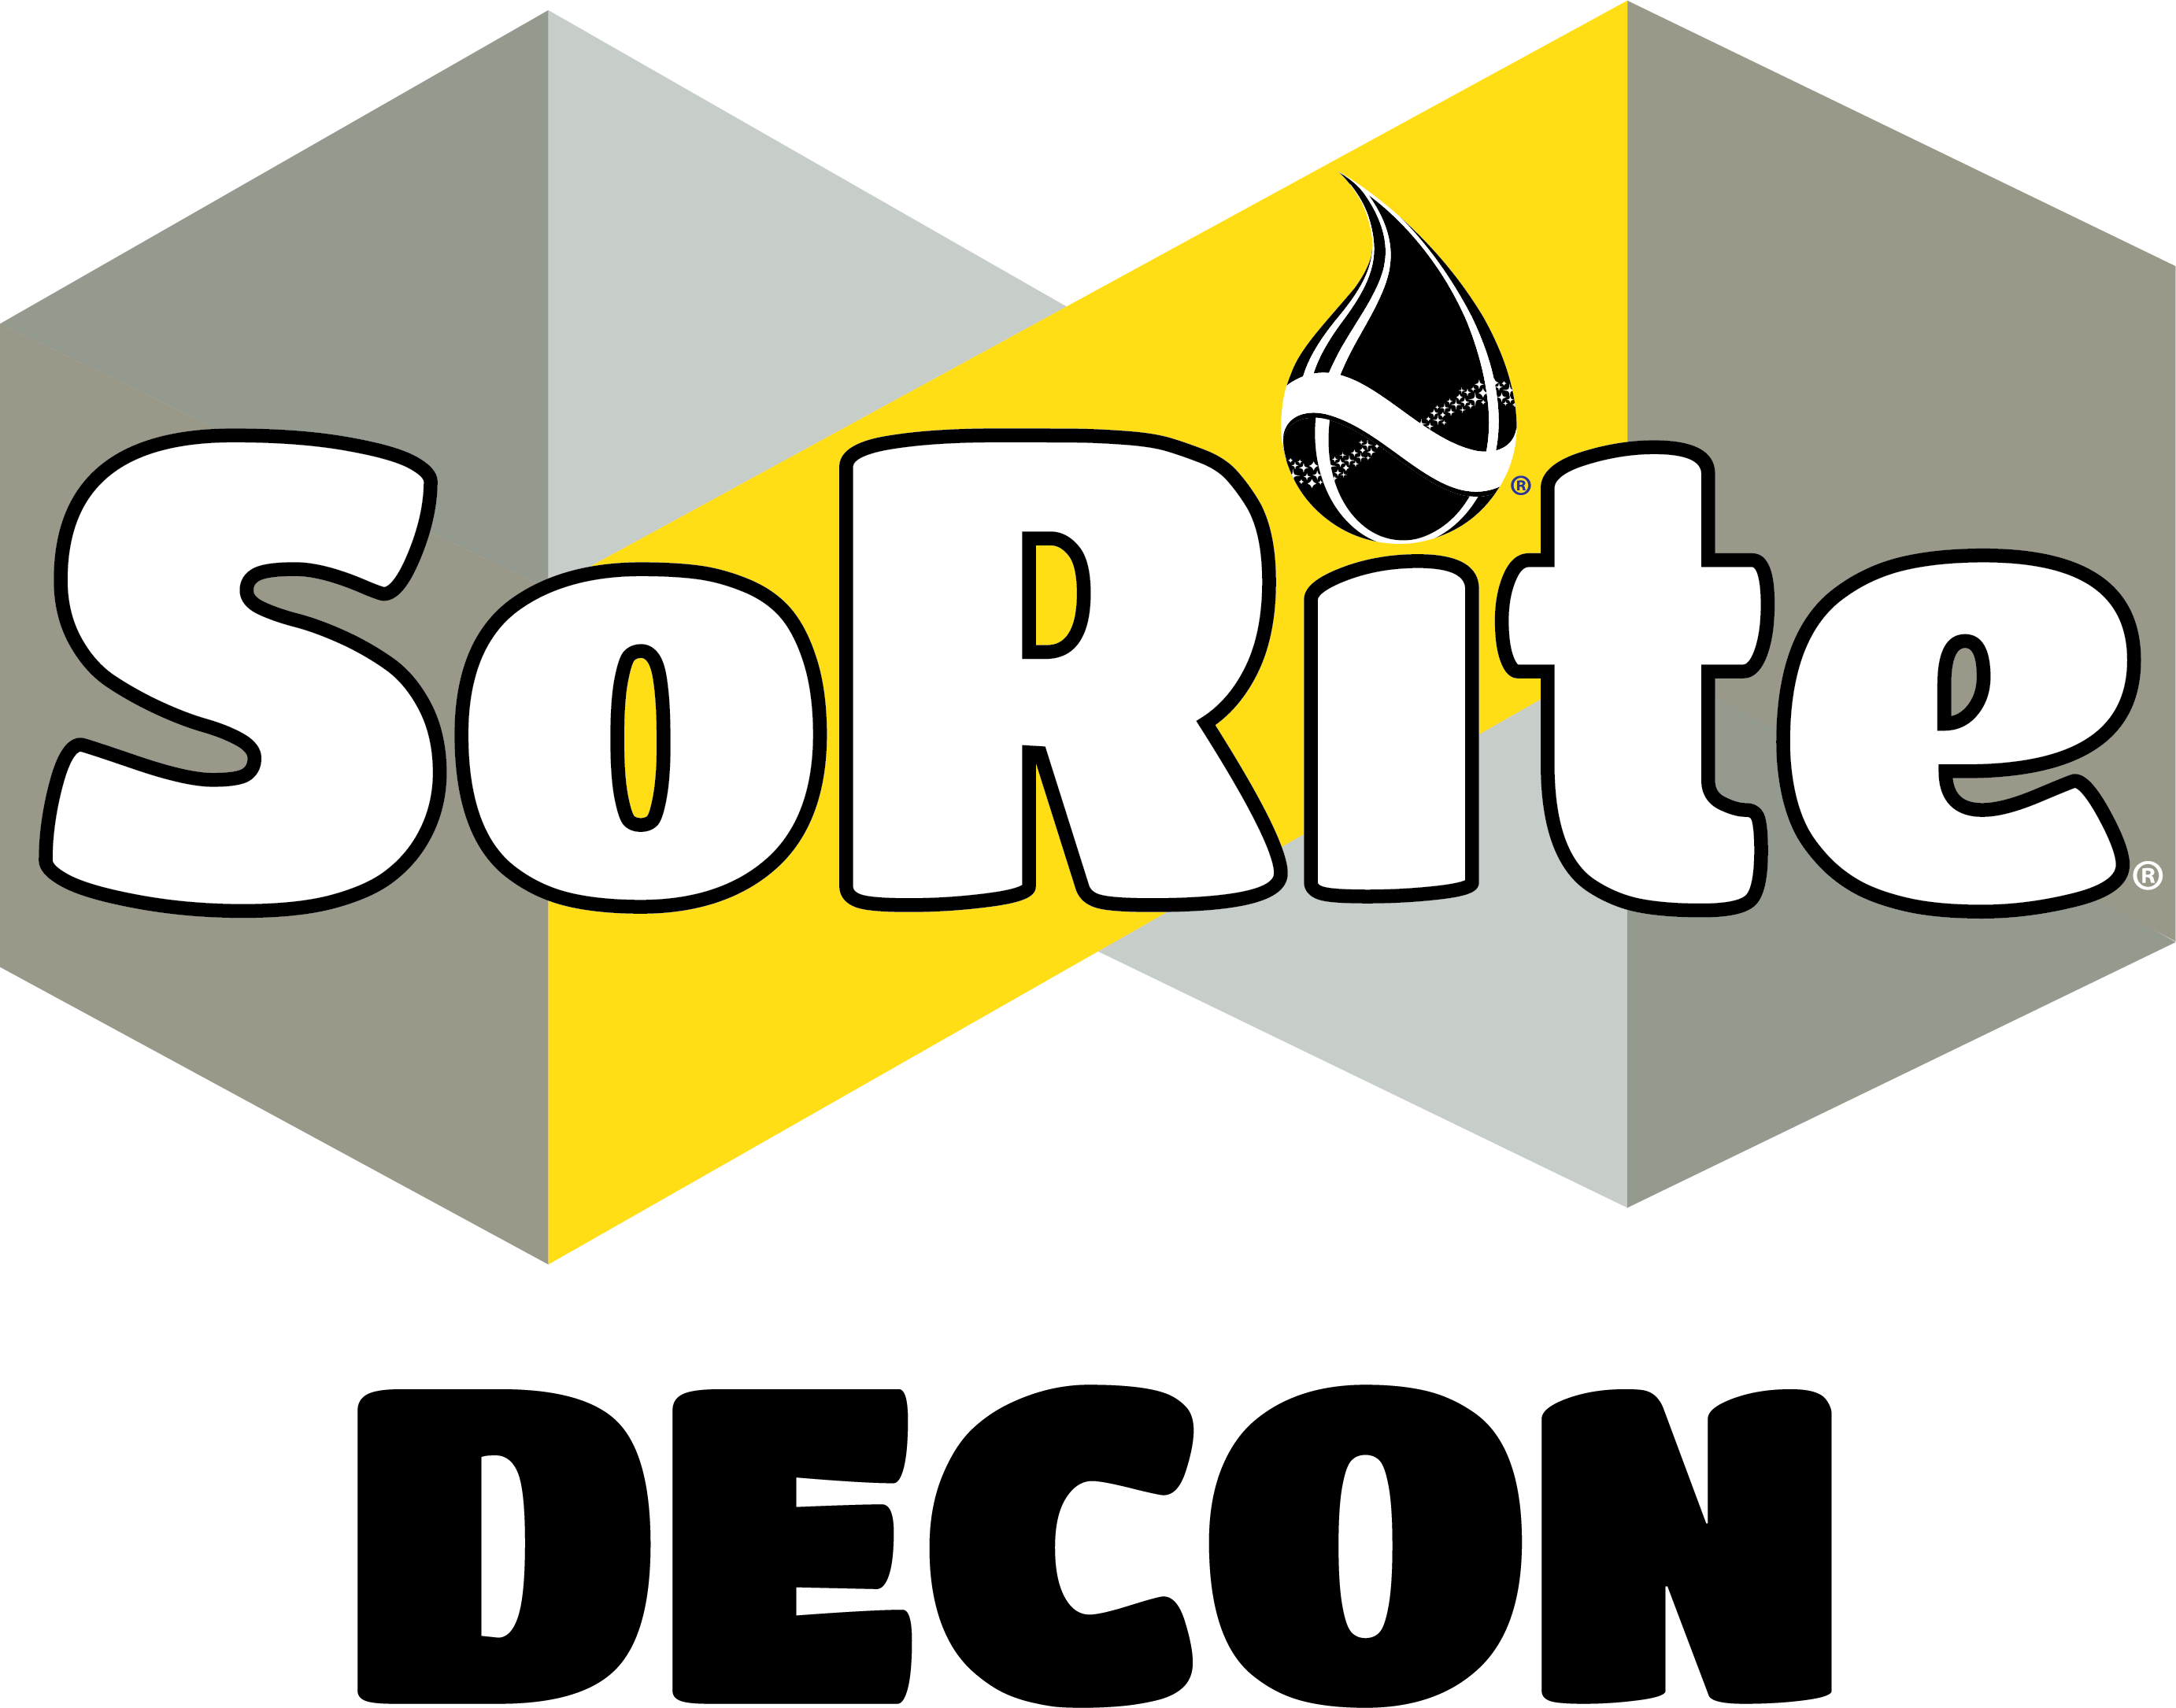 SoRite DECON